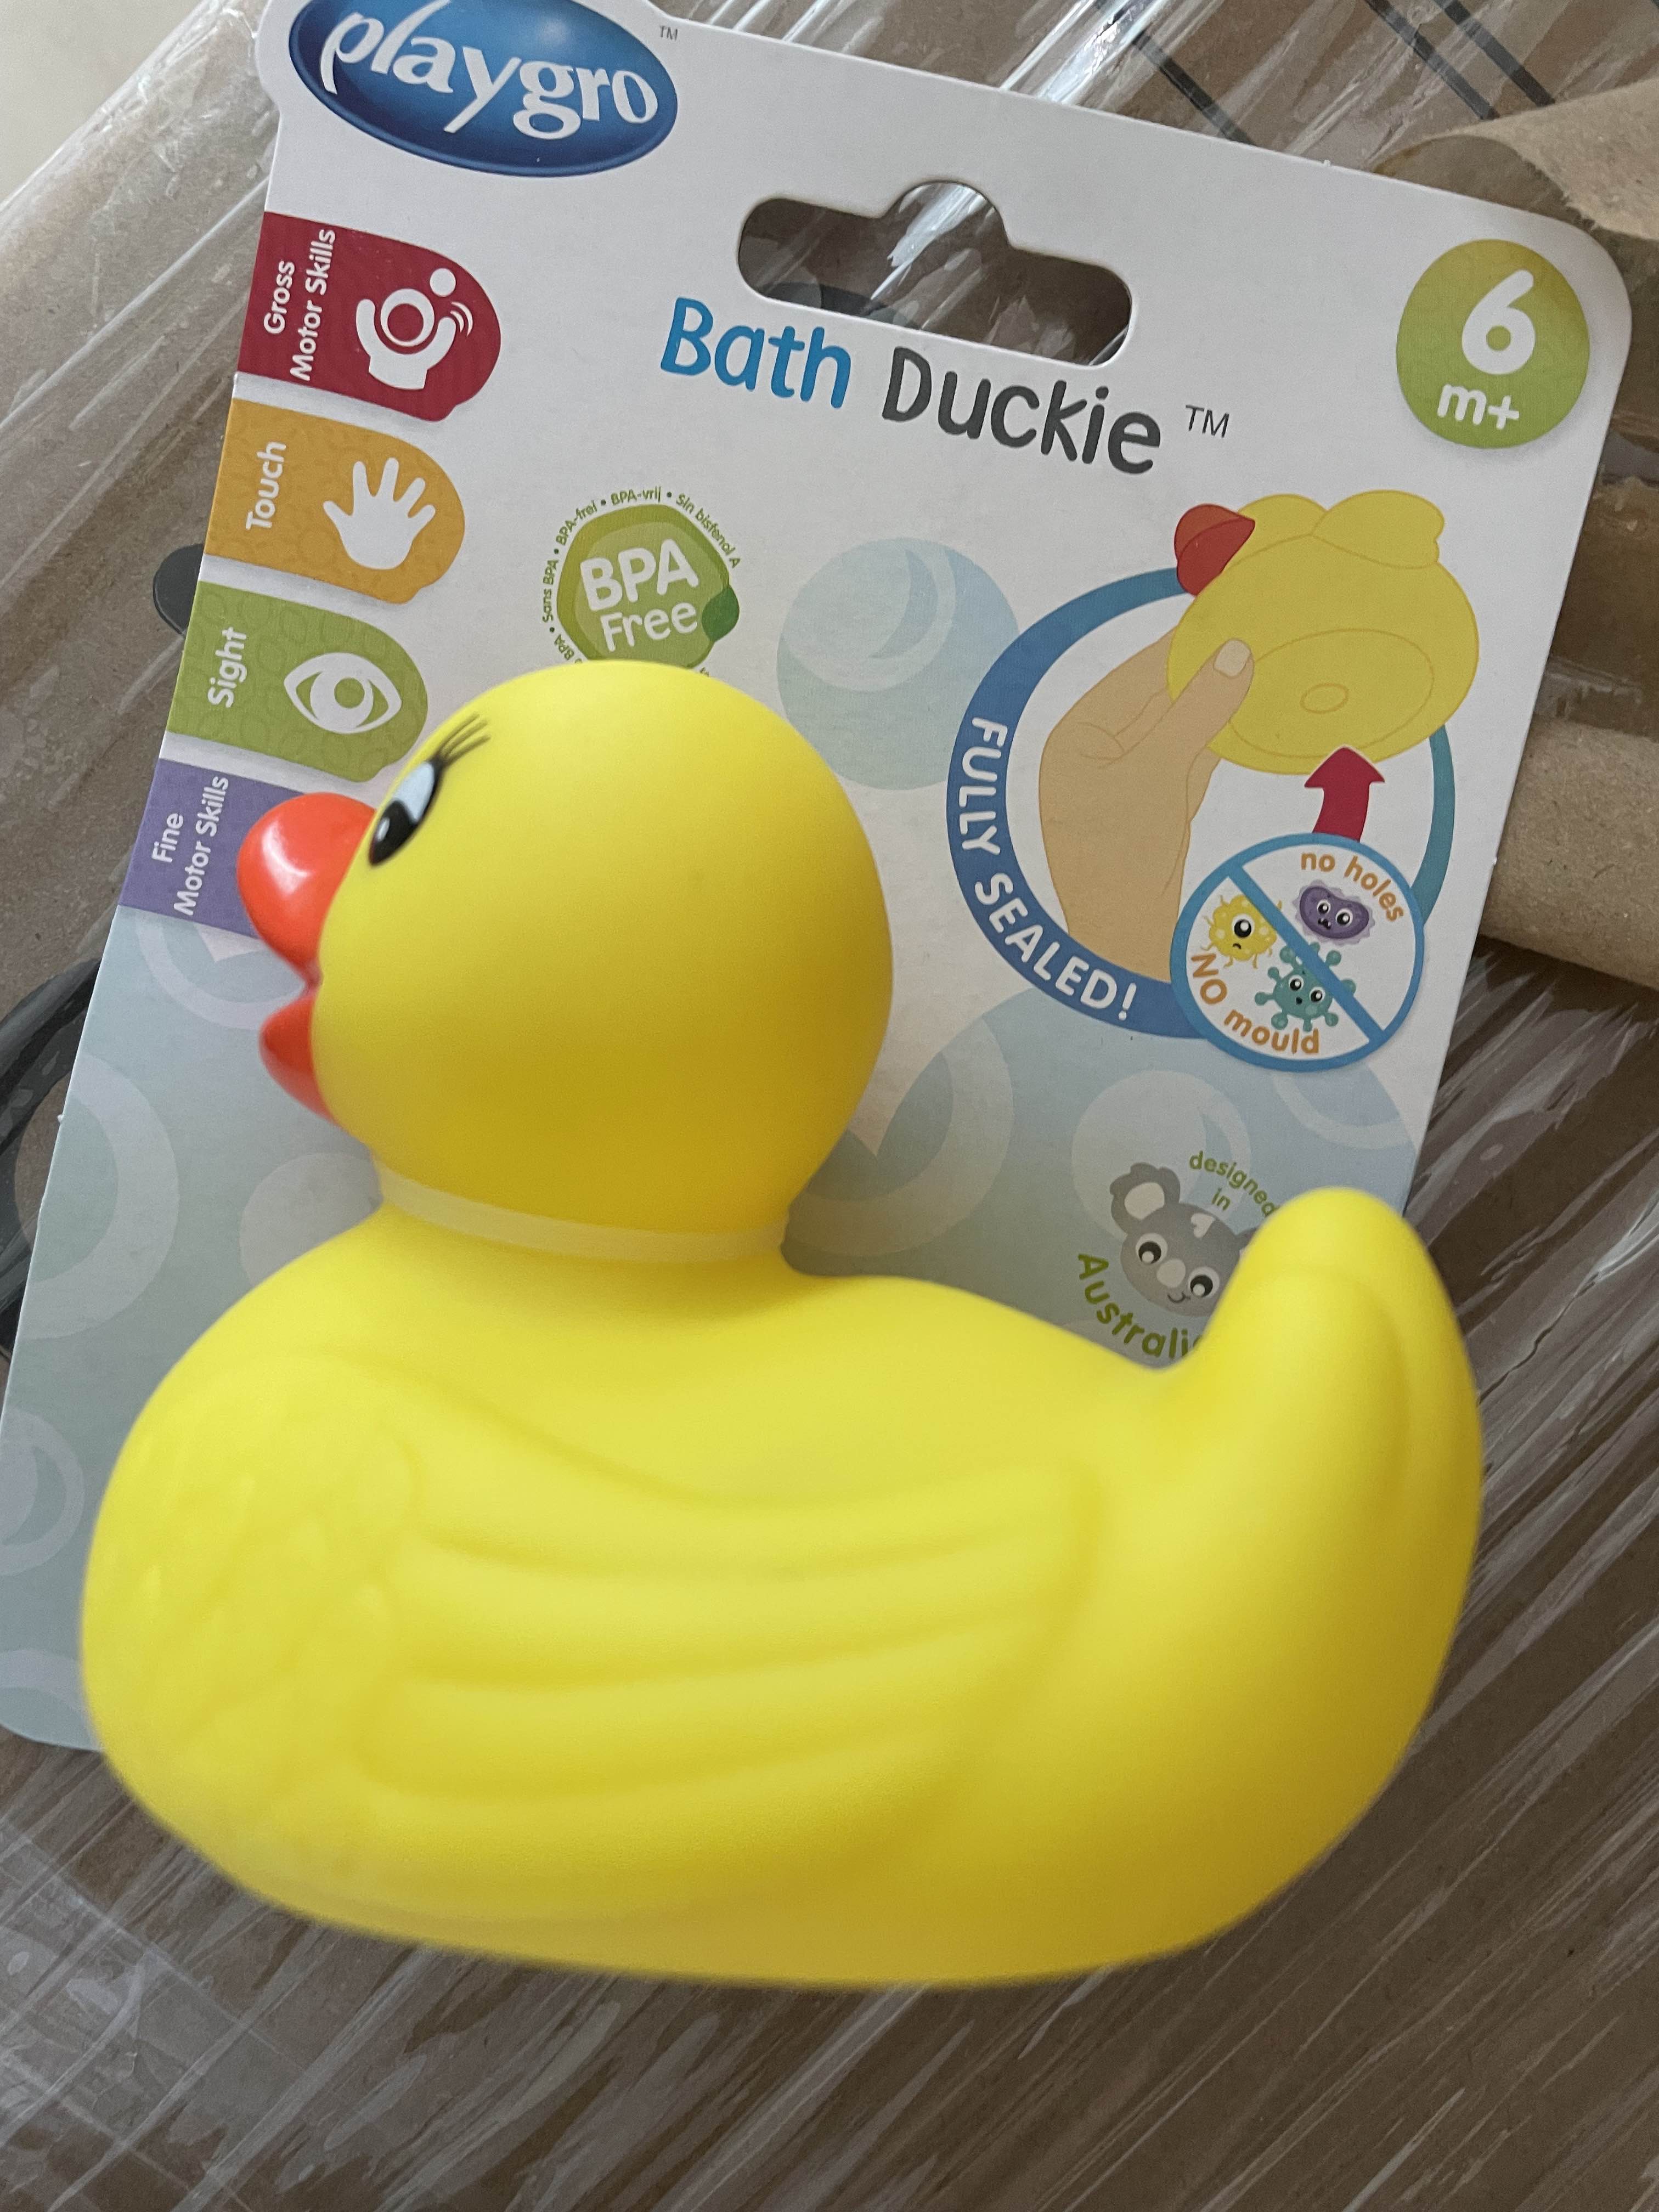 Munchkin White Hot Safety Duck Bath Toy